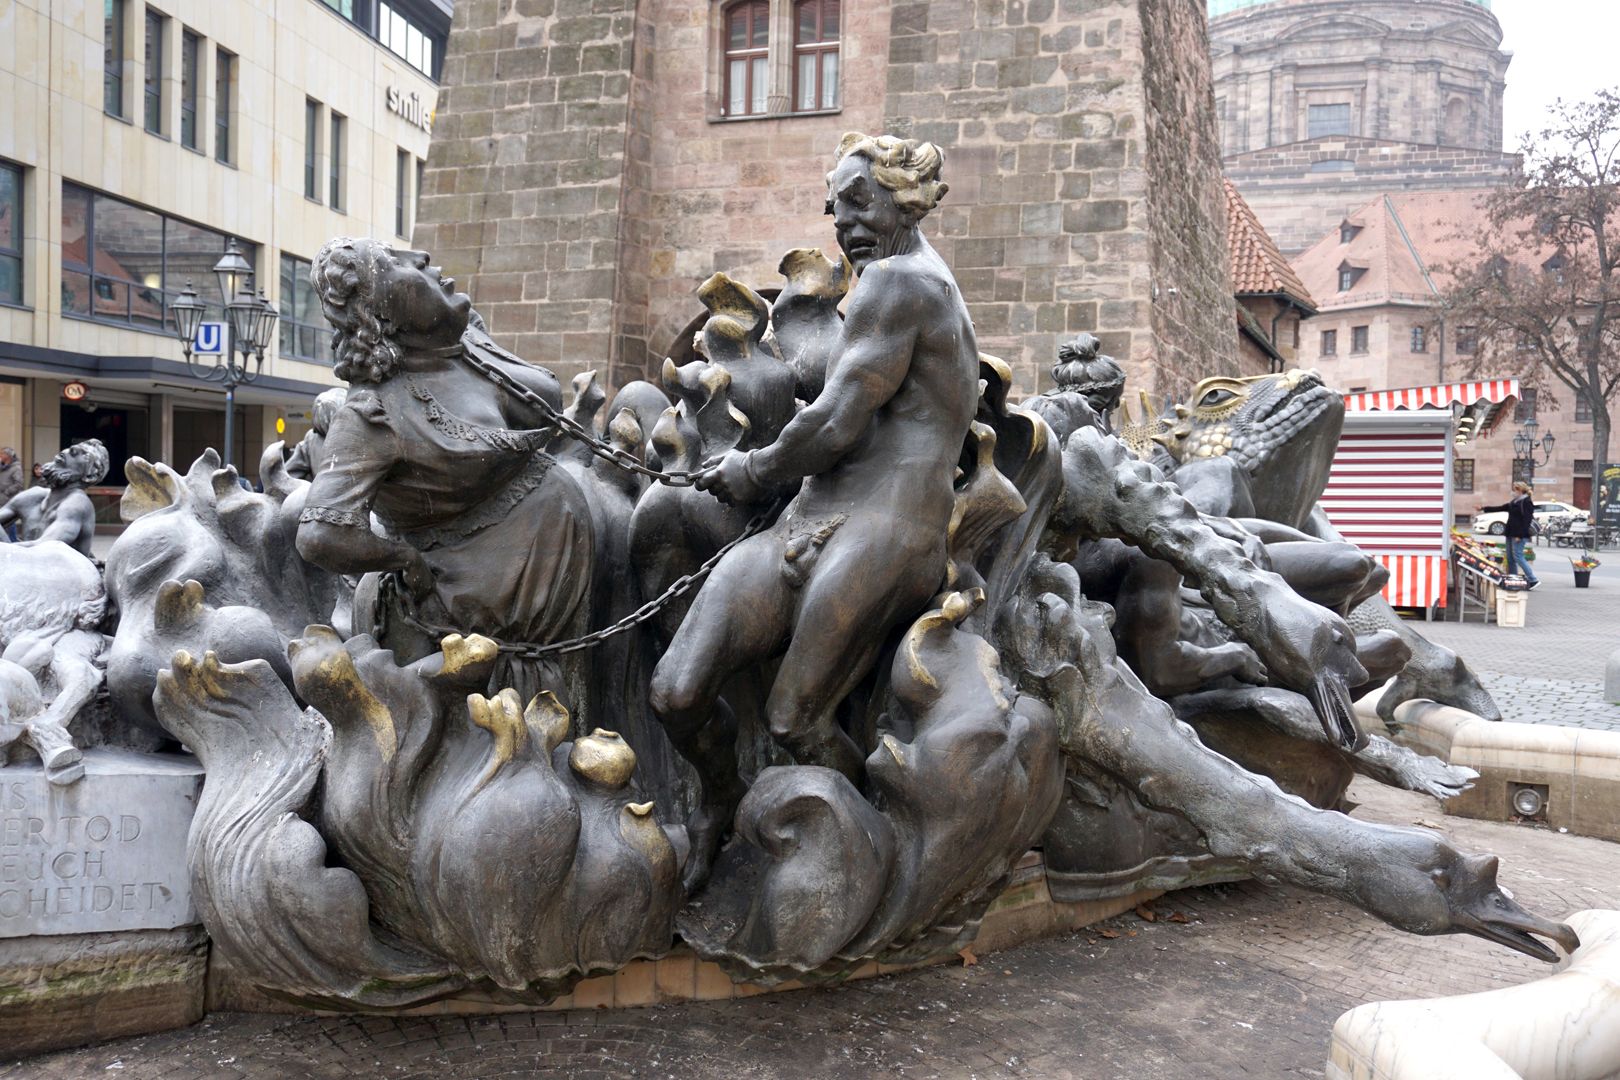 Ehekarussell / Hans-Sachs-Brunnen "Höllenfeuer" mit dem aneinander geketteten Paar